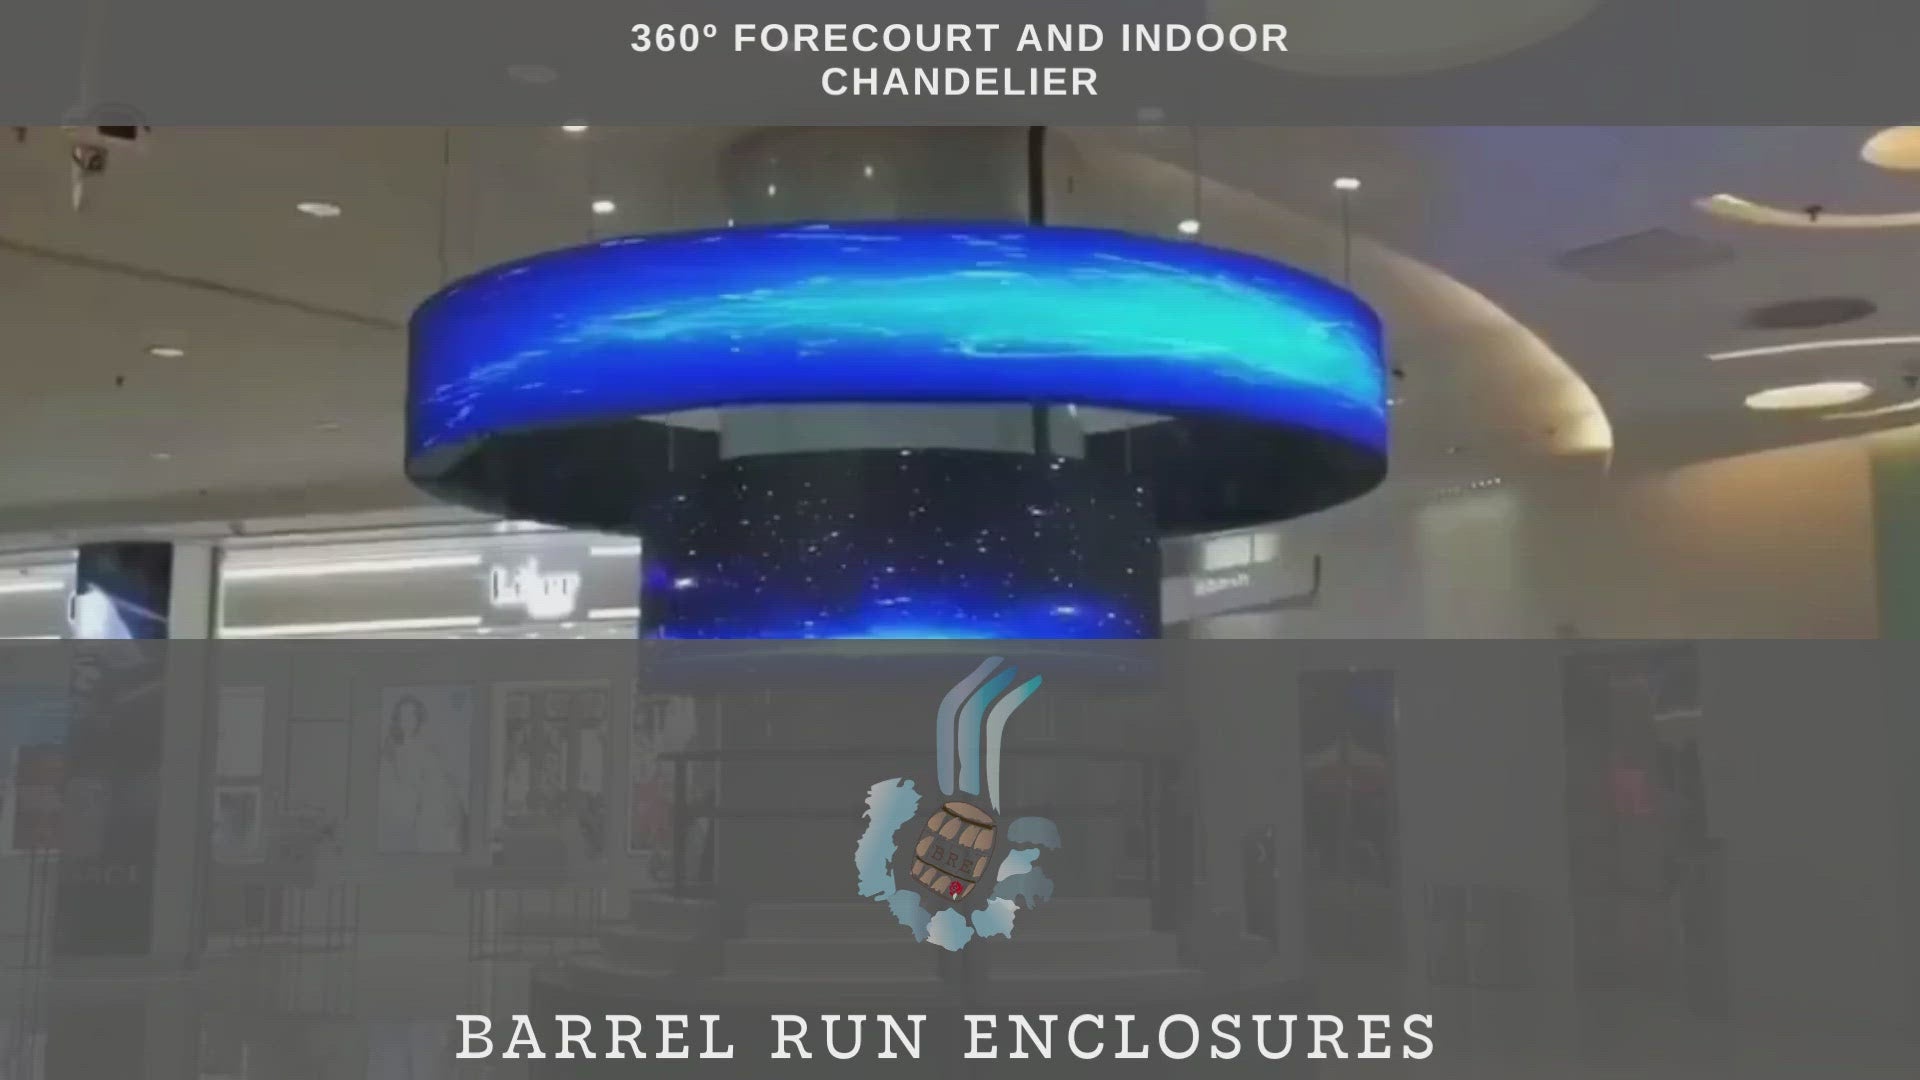 360 Forecourt, and Indoor Digital Chandeliers